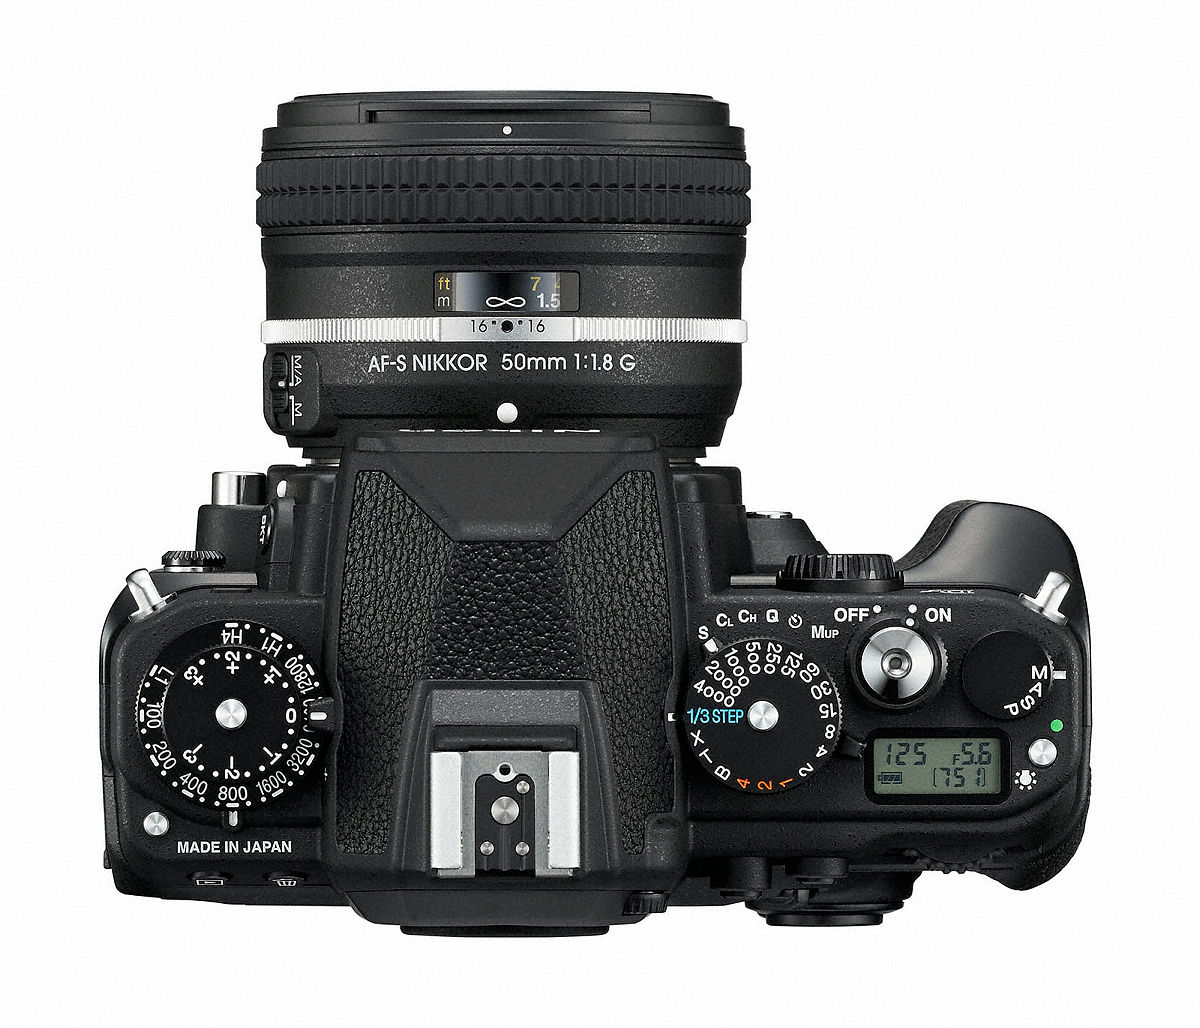 デジタル一眼レフカメラ「Nikon Df」はISO感度や絞り値を専用ダイヤルで設定 - GIGAZINE